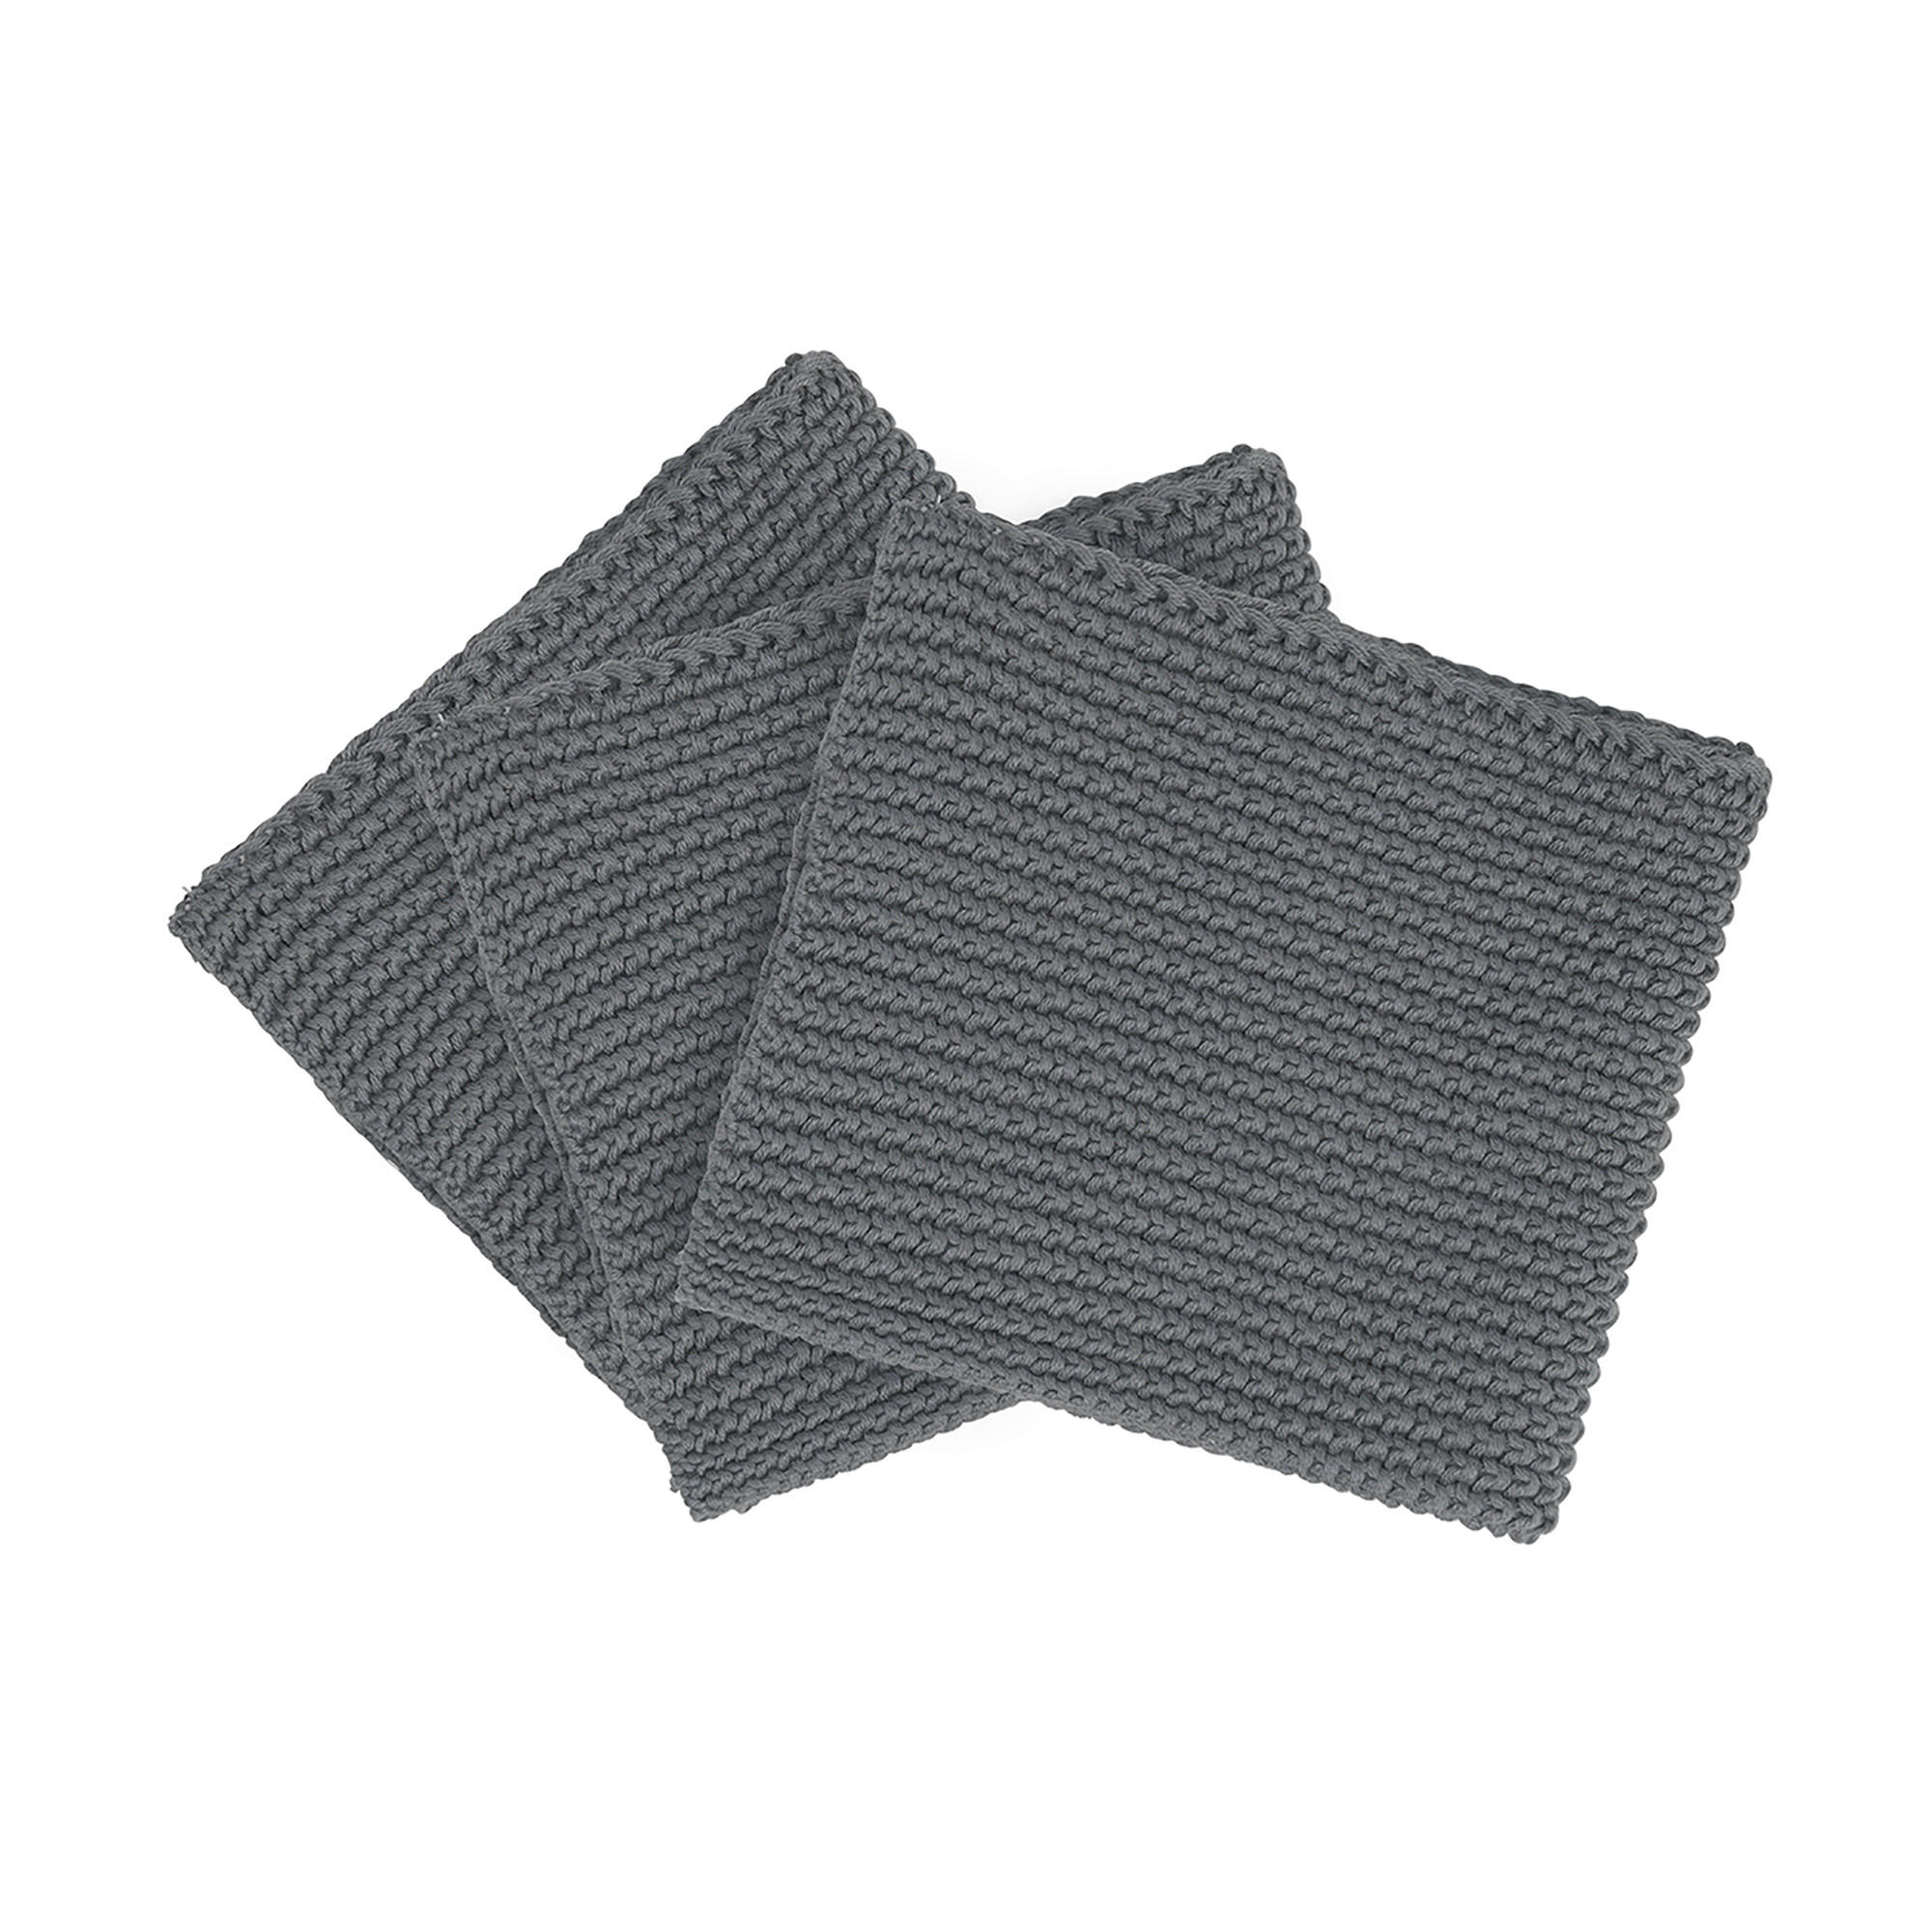 GESCHIRRTUCH-SET  3-teilig  - Taupe, Basics, Textil (25/25cm) - Blomus